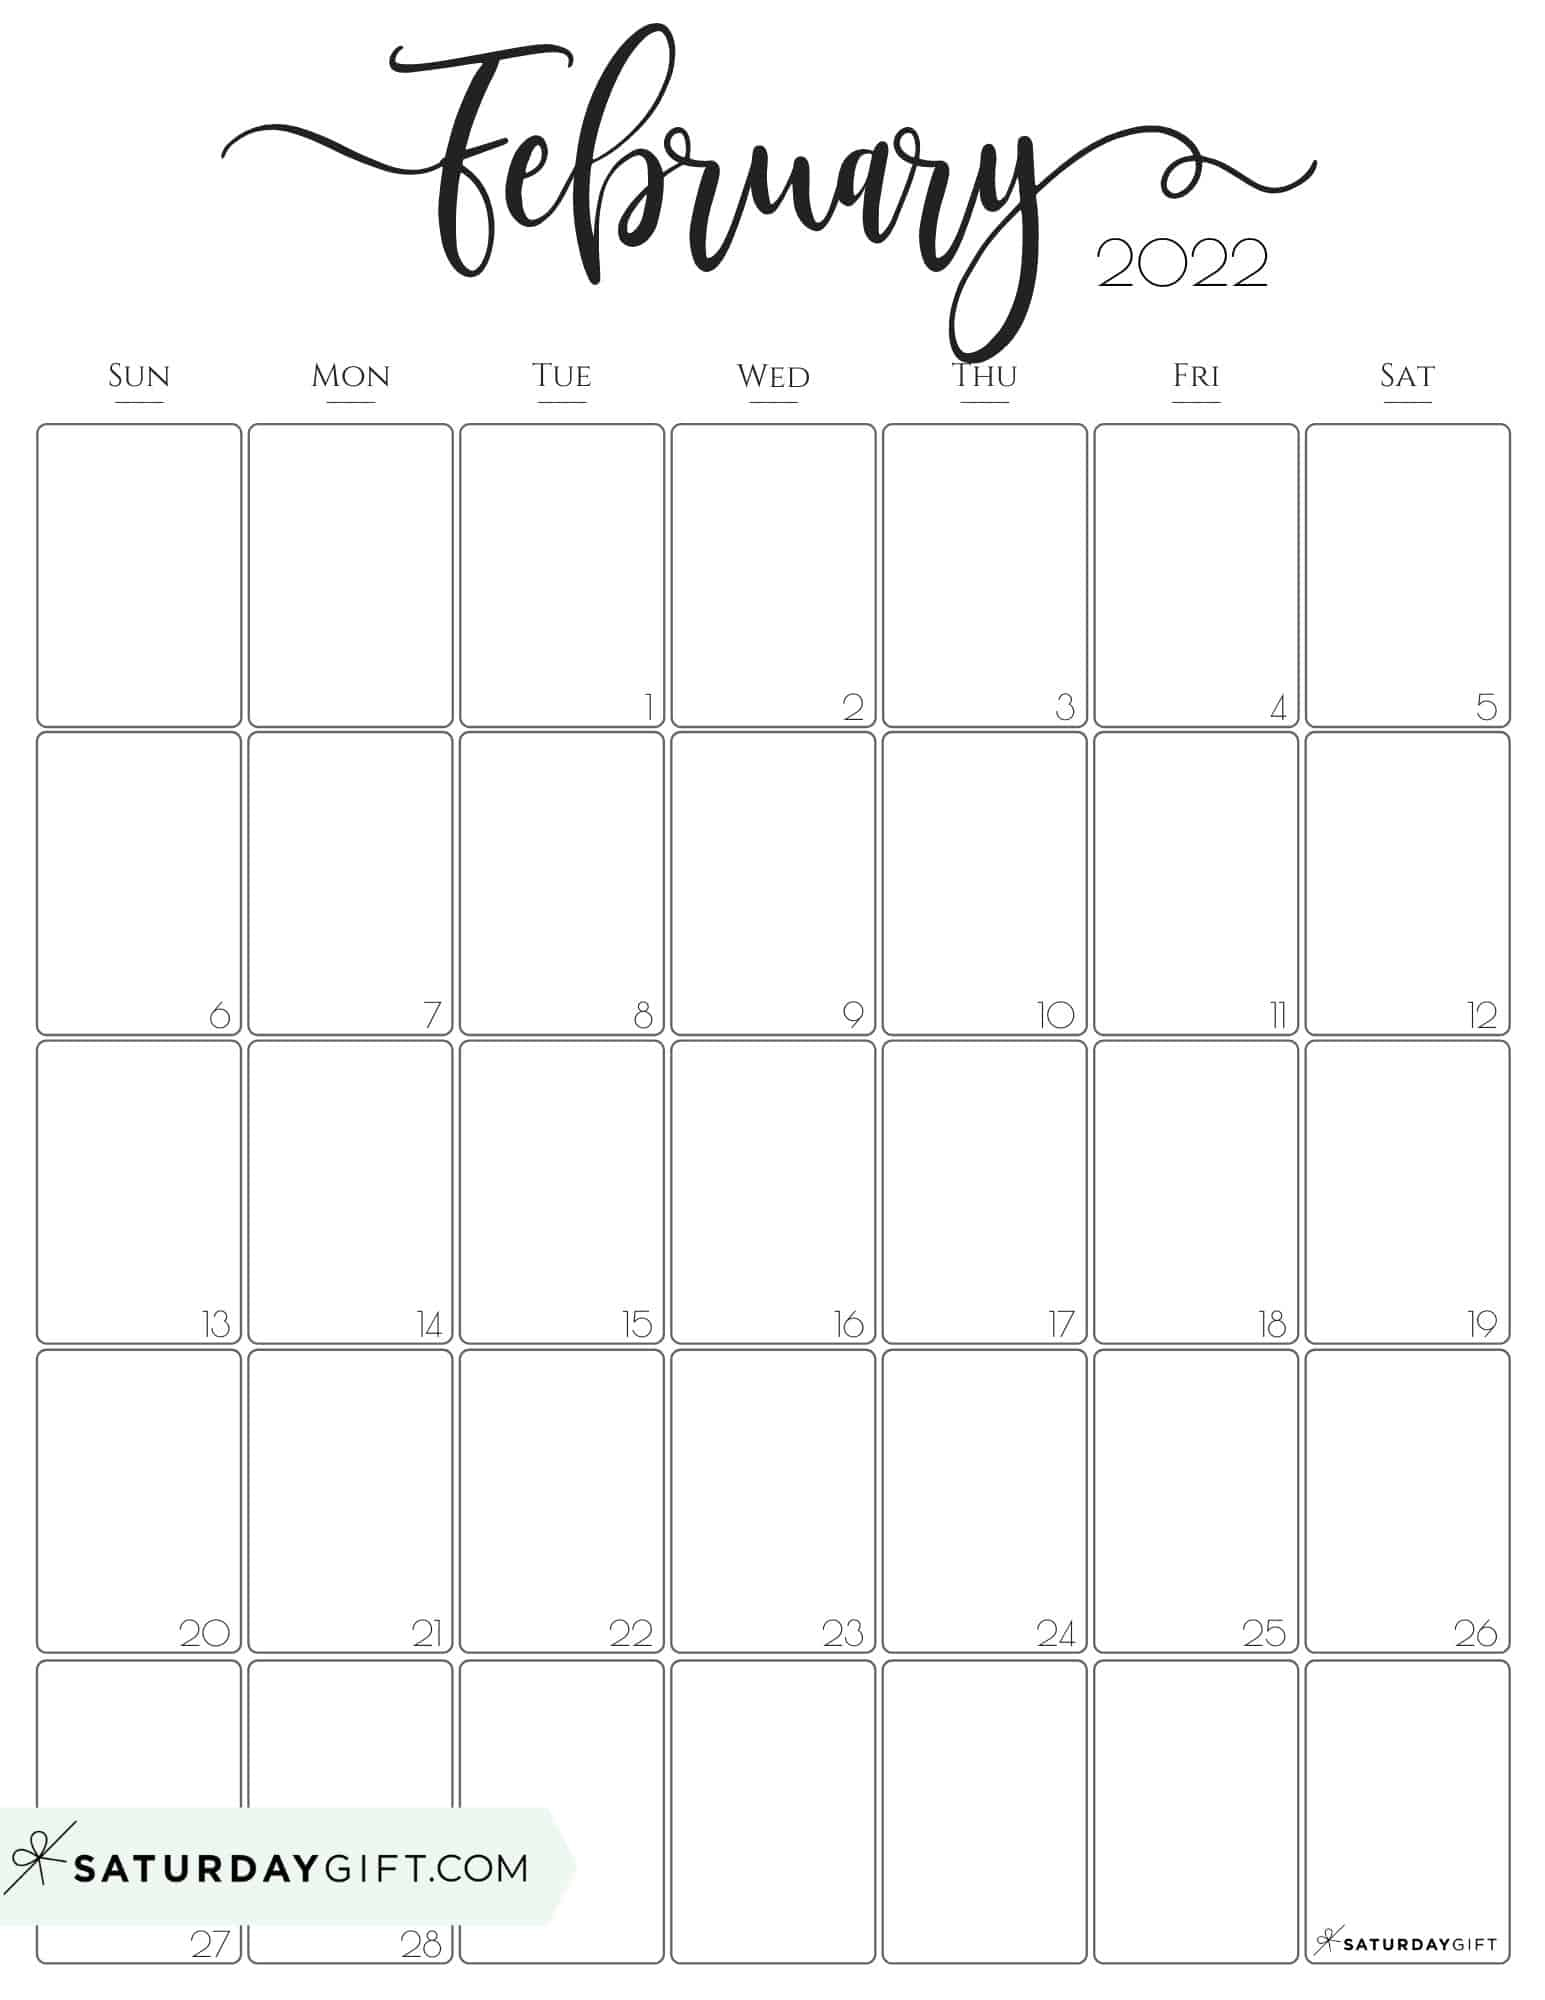 Take 2022 Calendar For February